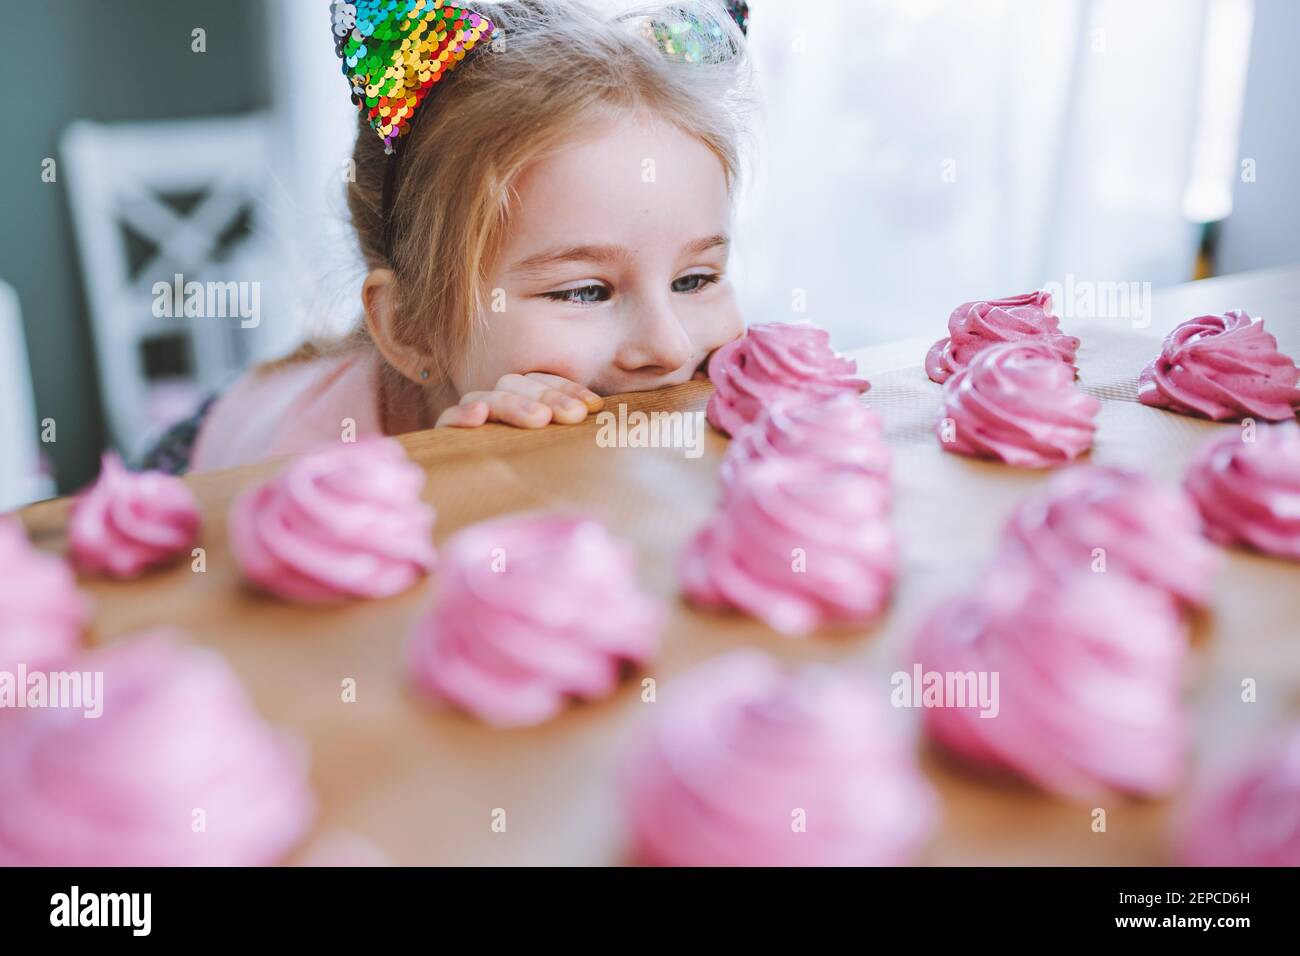 Bambina con i capelli biondi e gli occhi blu guardare su deliziosi marshmallow rosa fatto in casa ot zephyr sul tavolo in cucina. Foto Stock